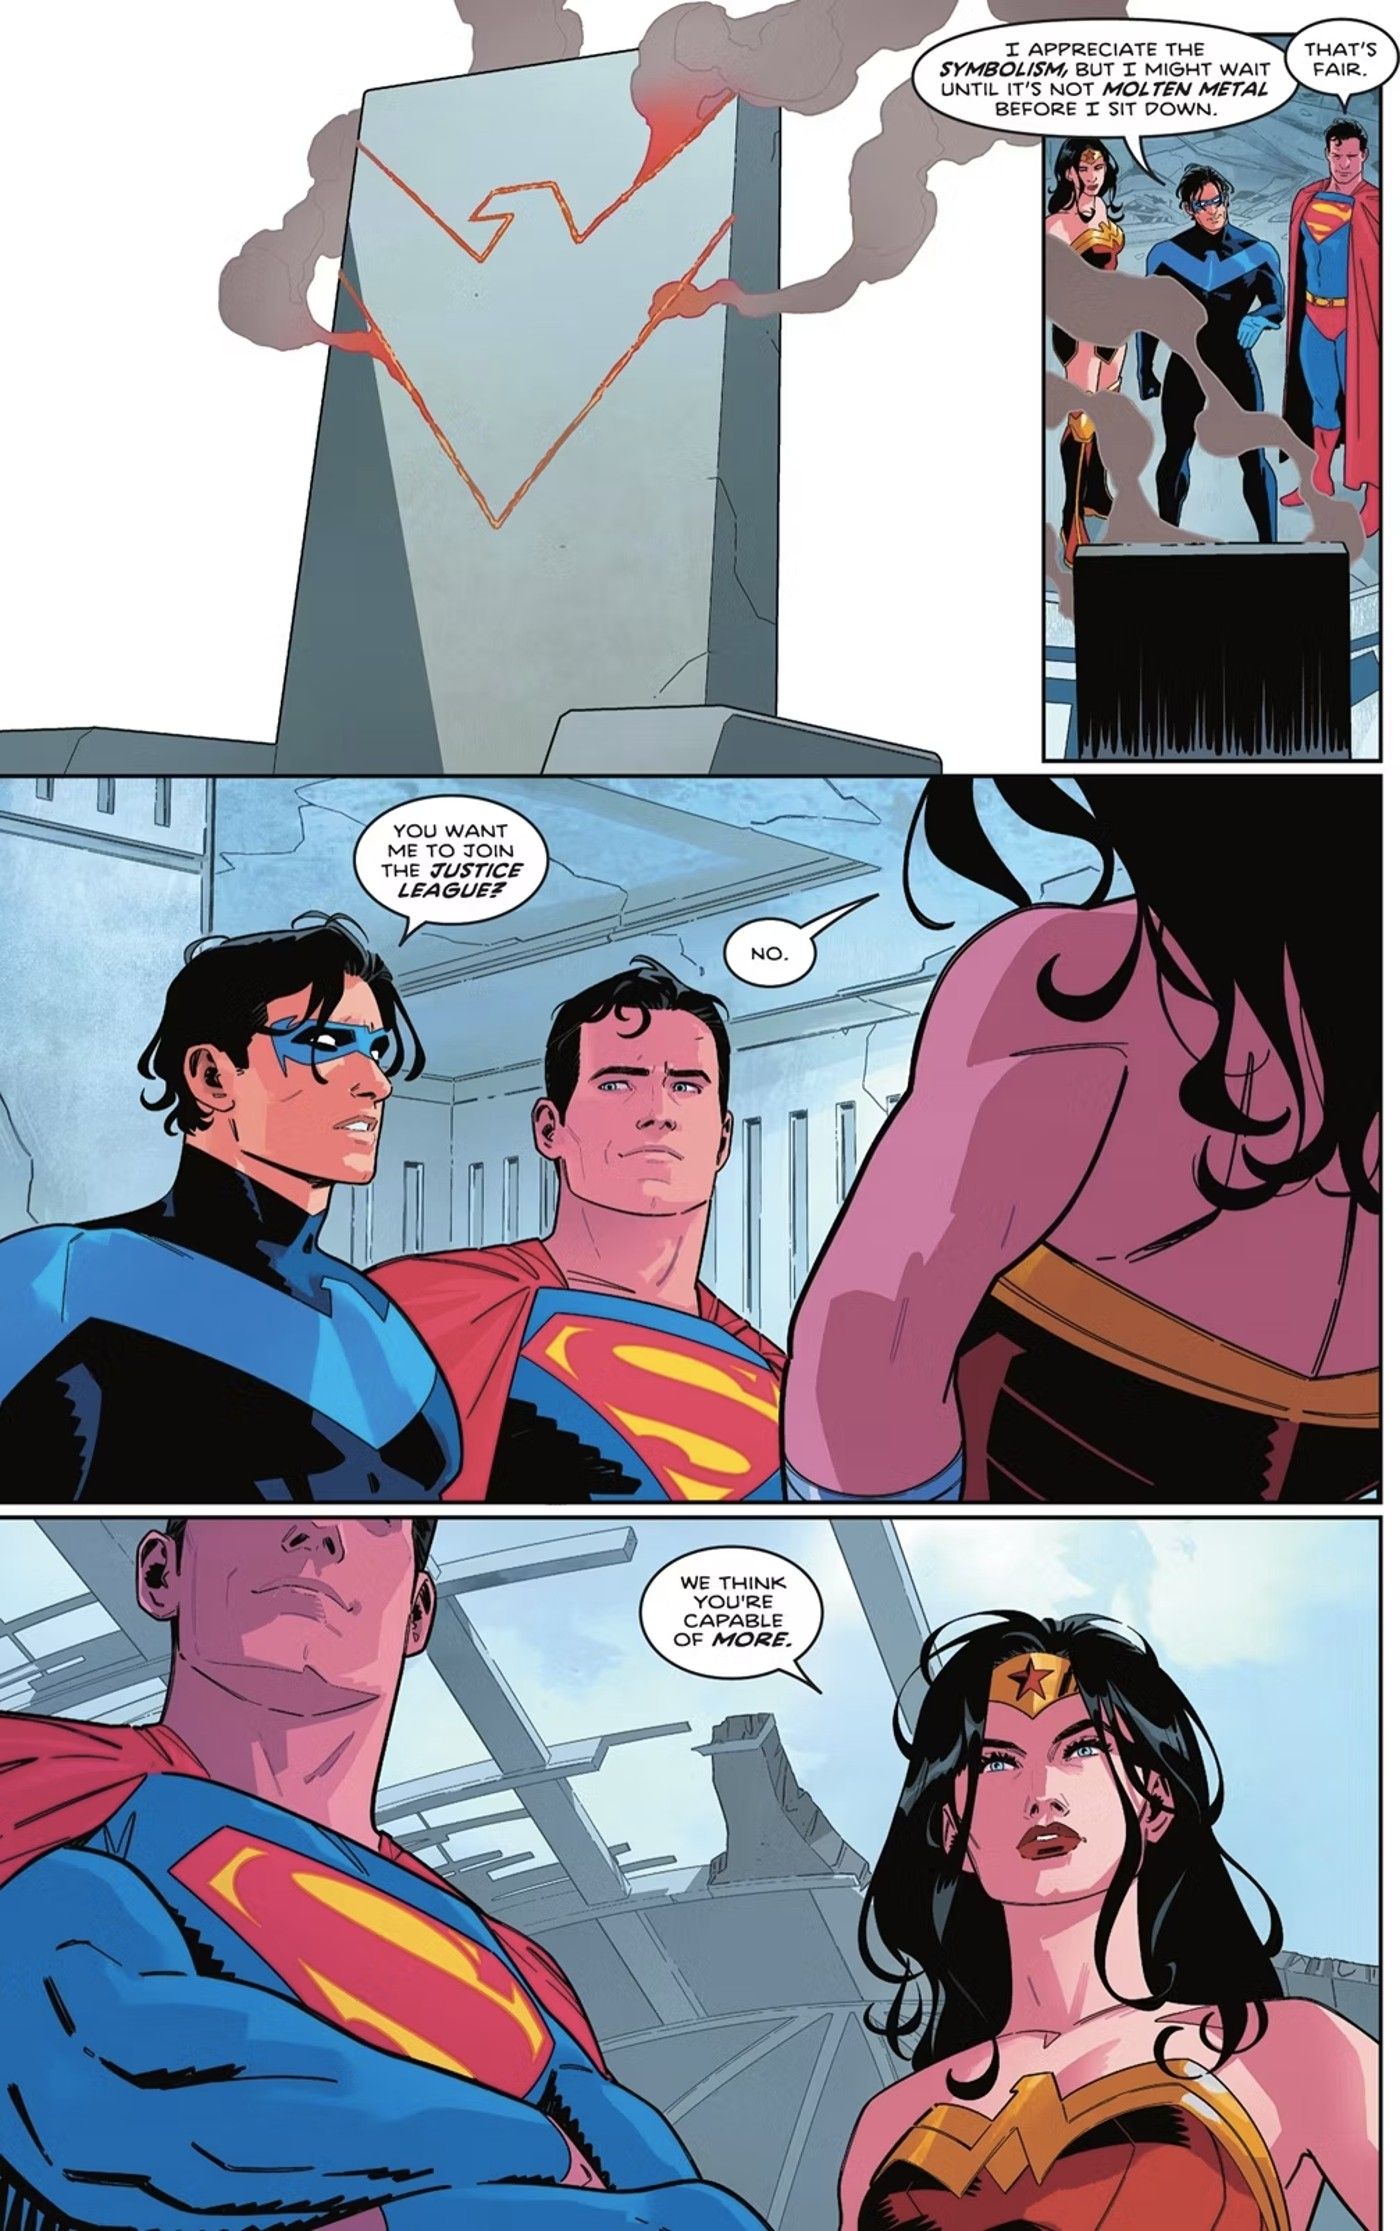 Nightwing Superman Wonder Woman